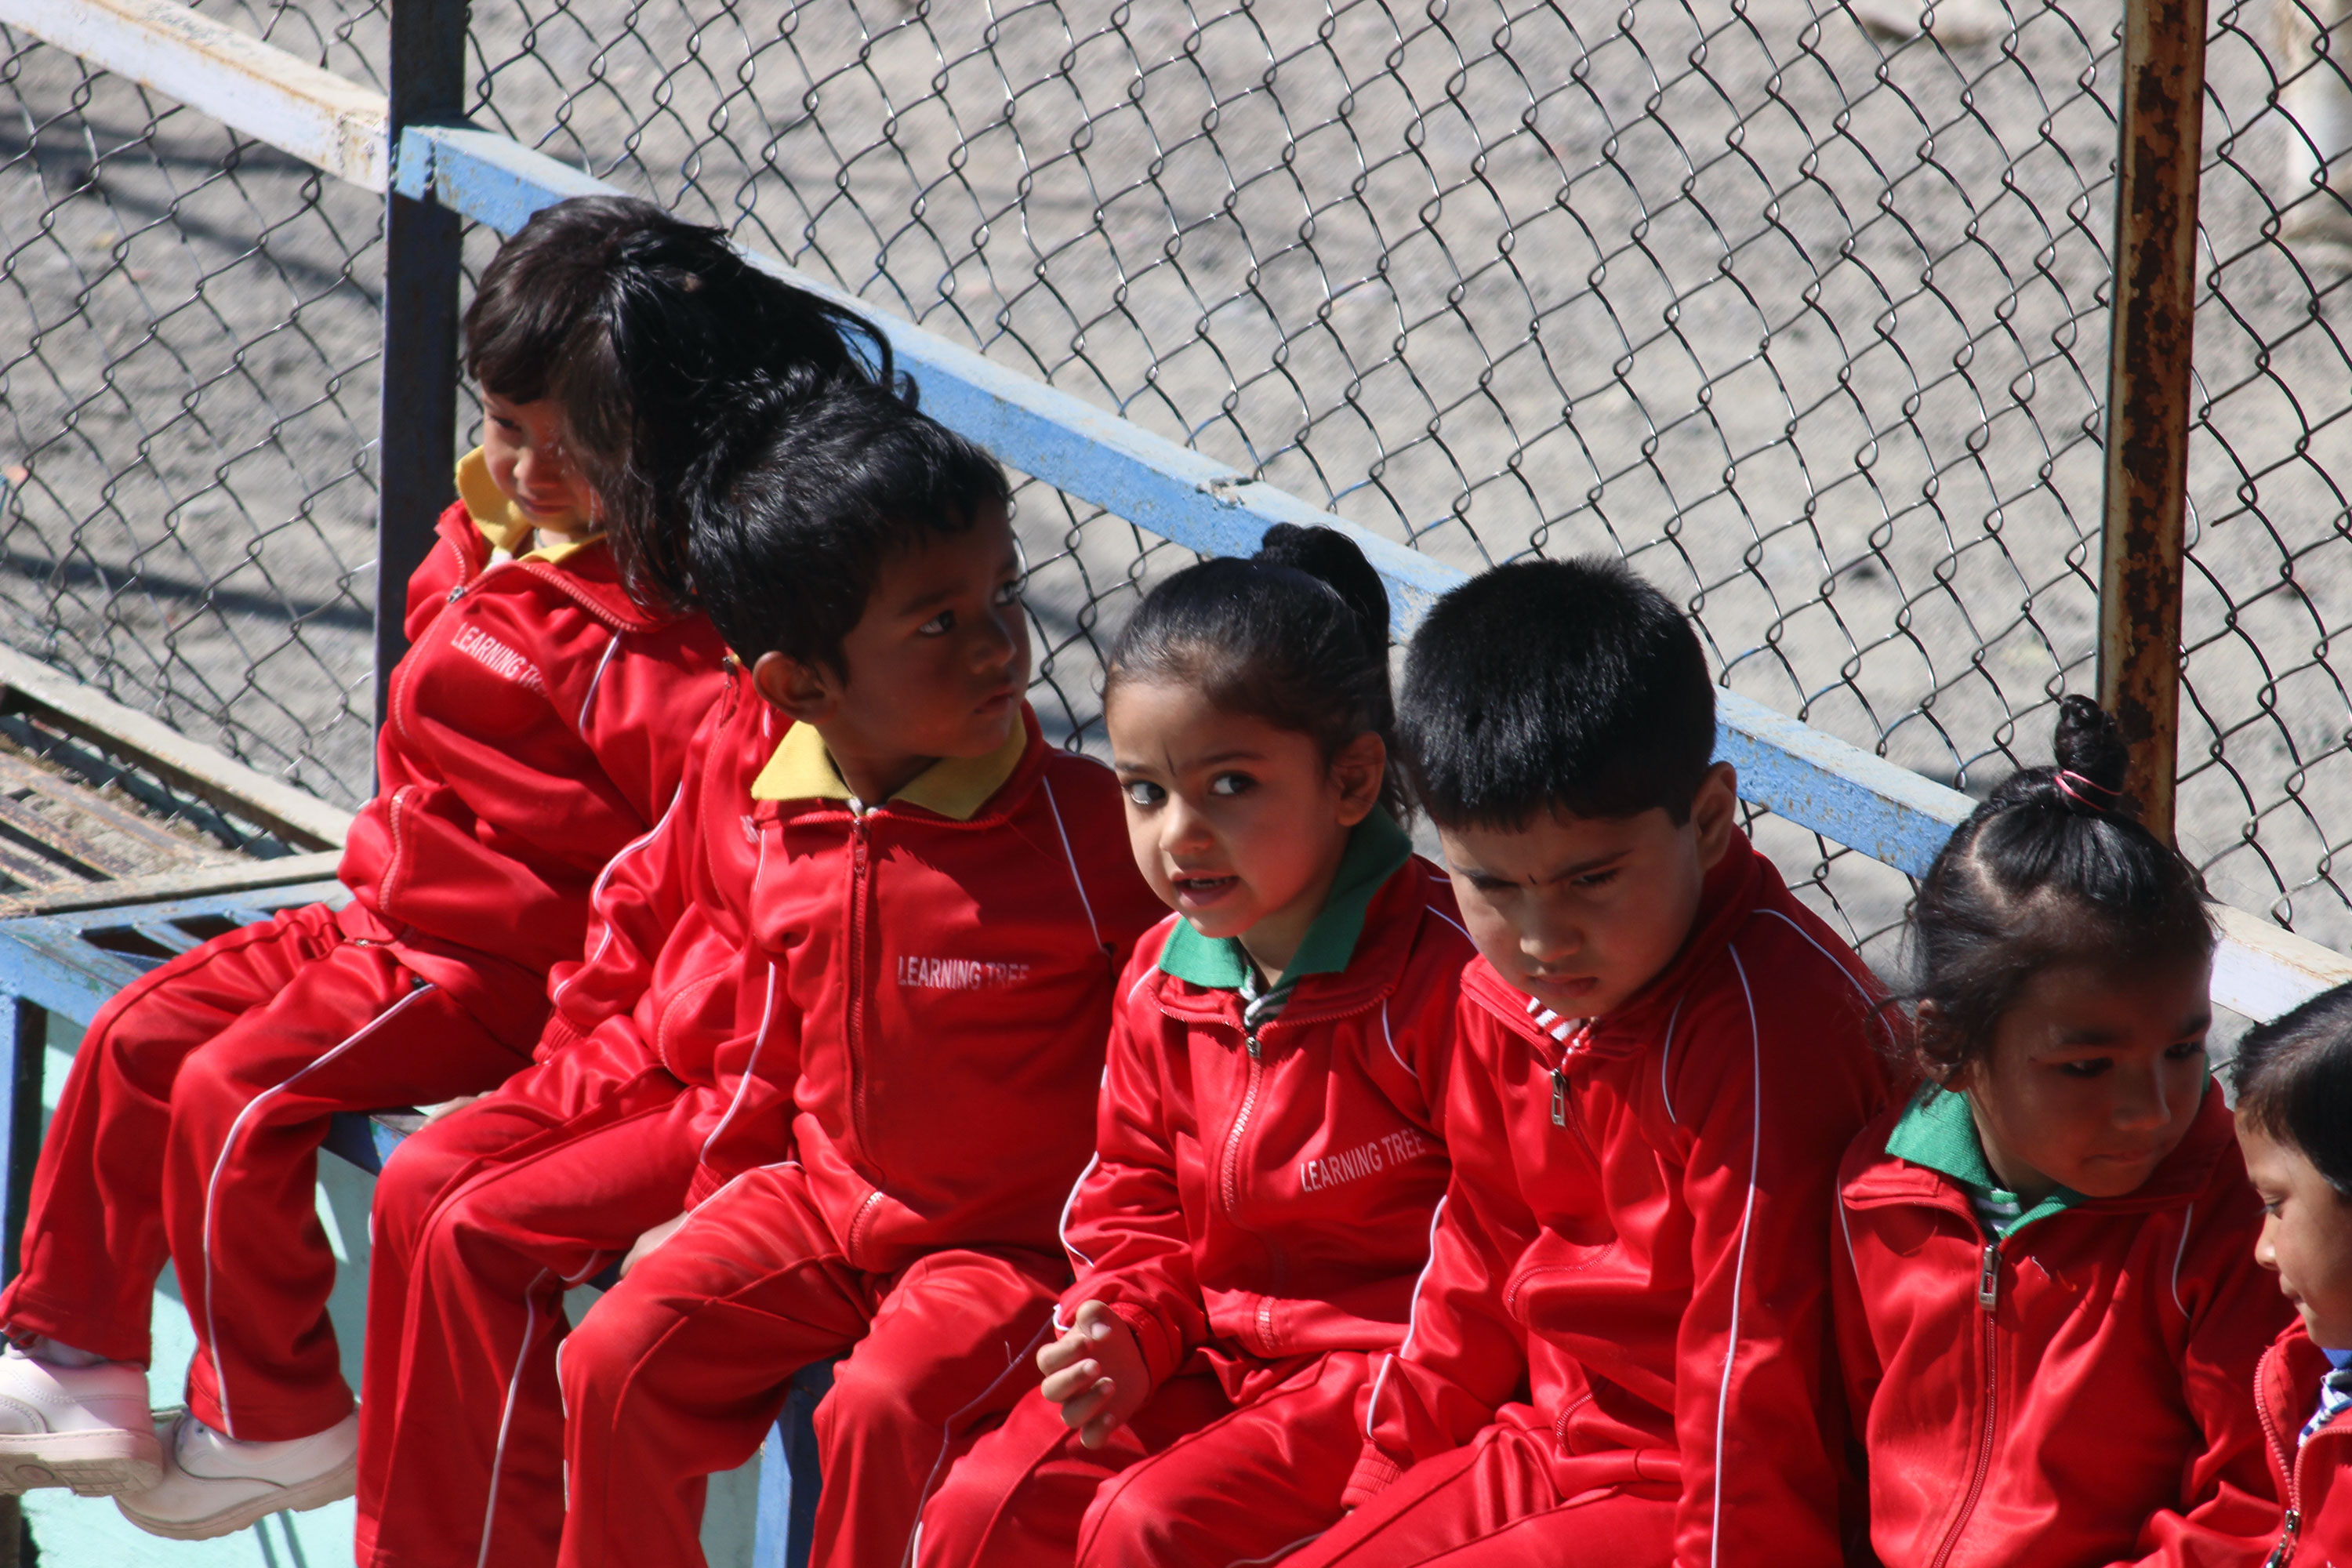 School children in uniform